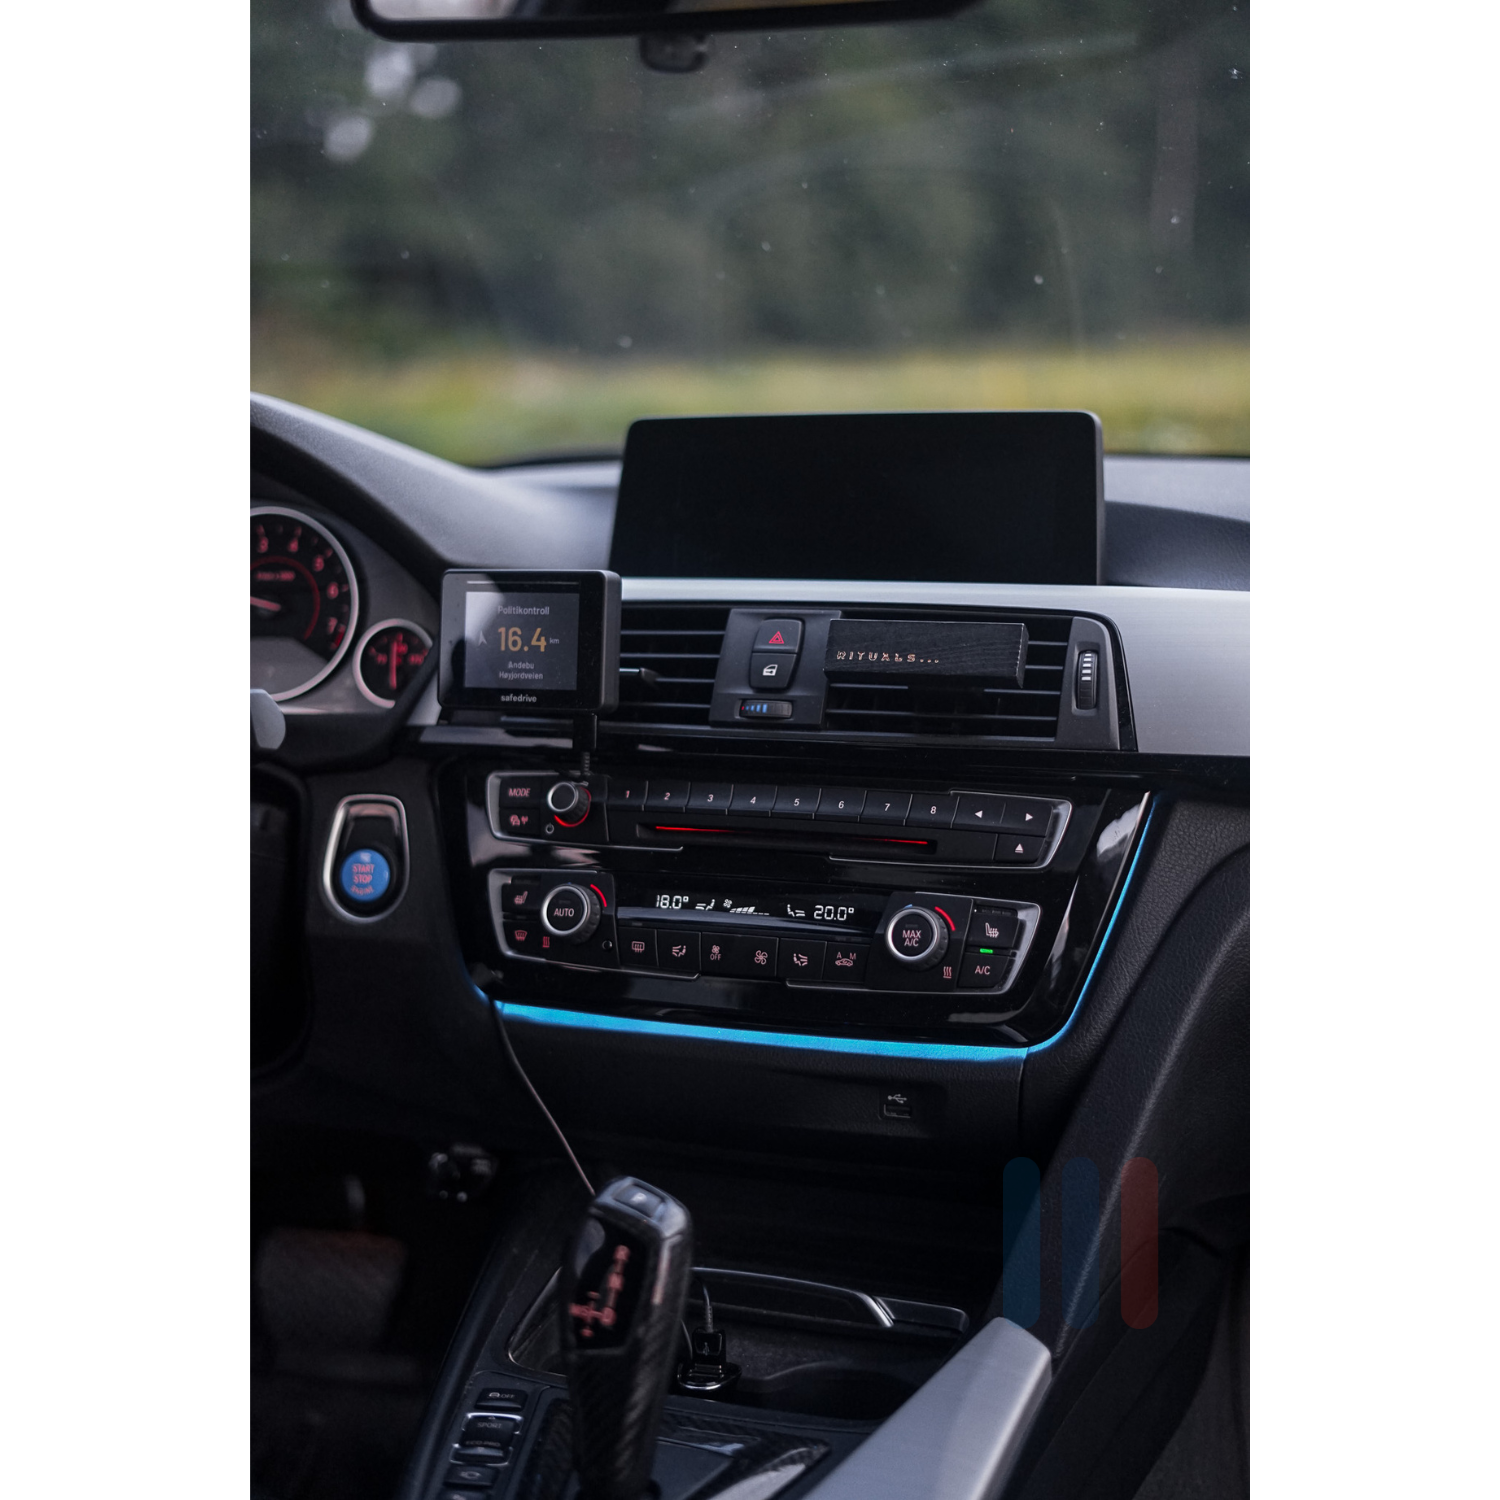 BMW F3x/F8x LED AC Panel